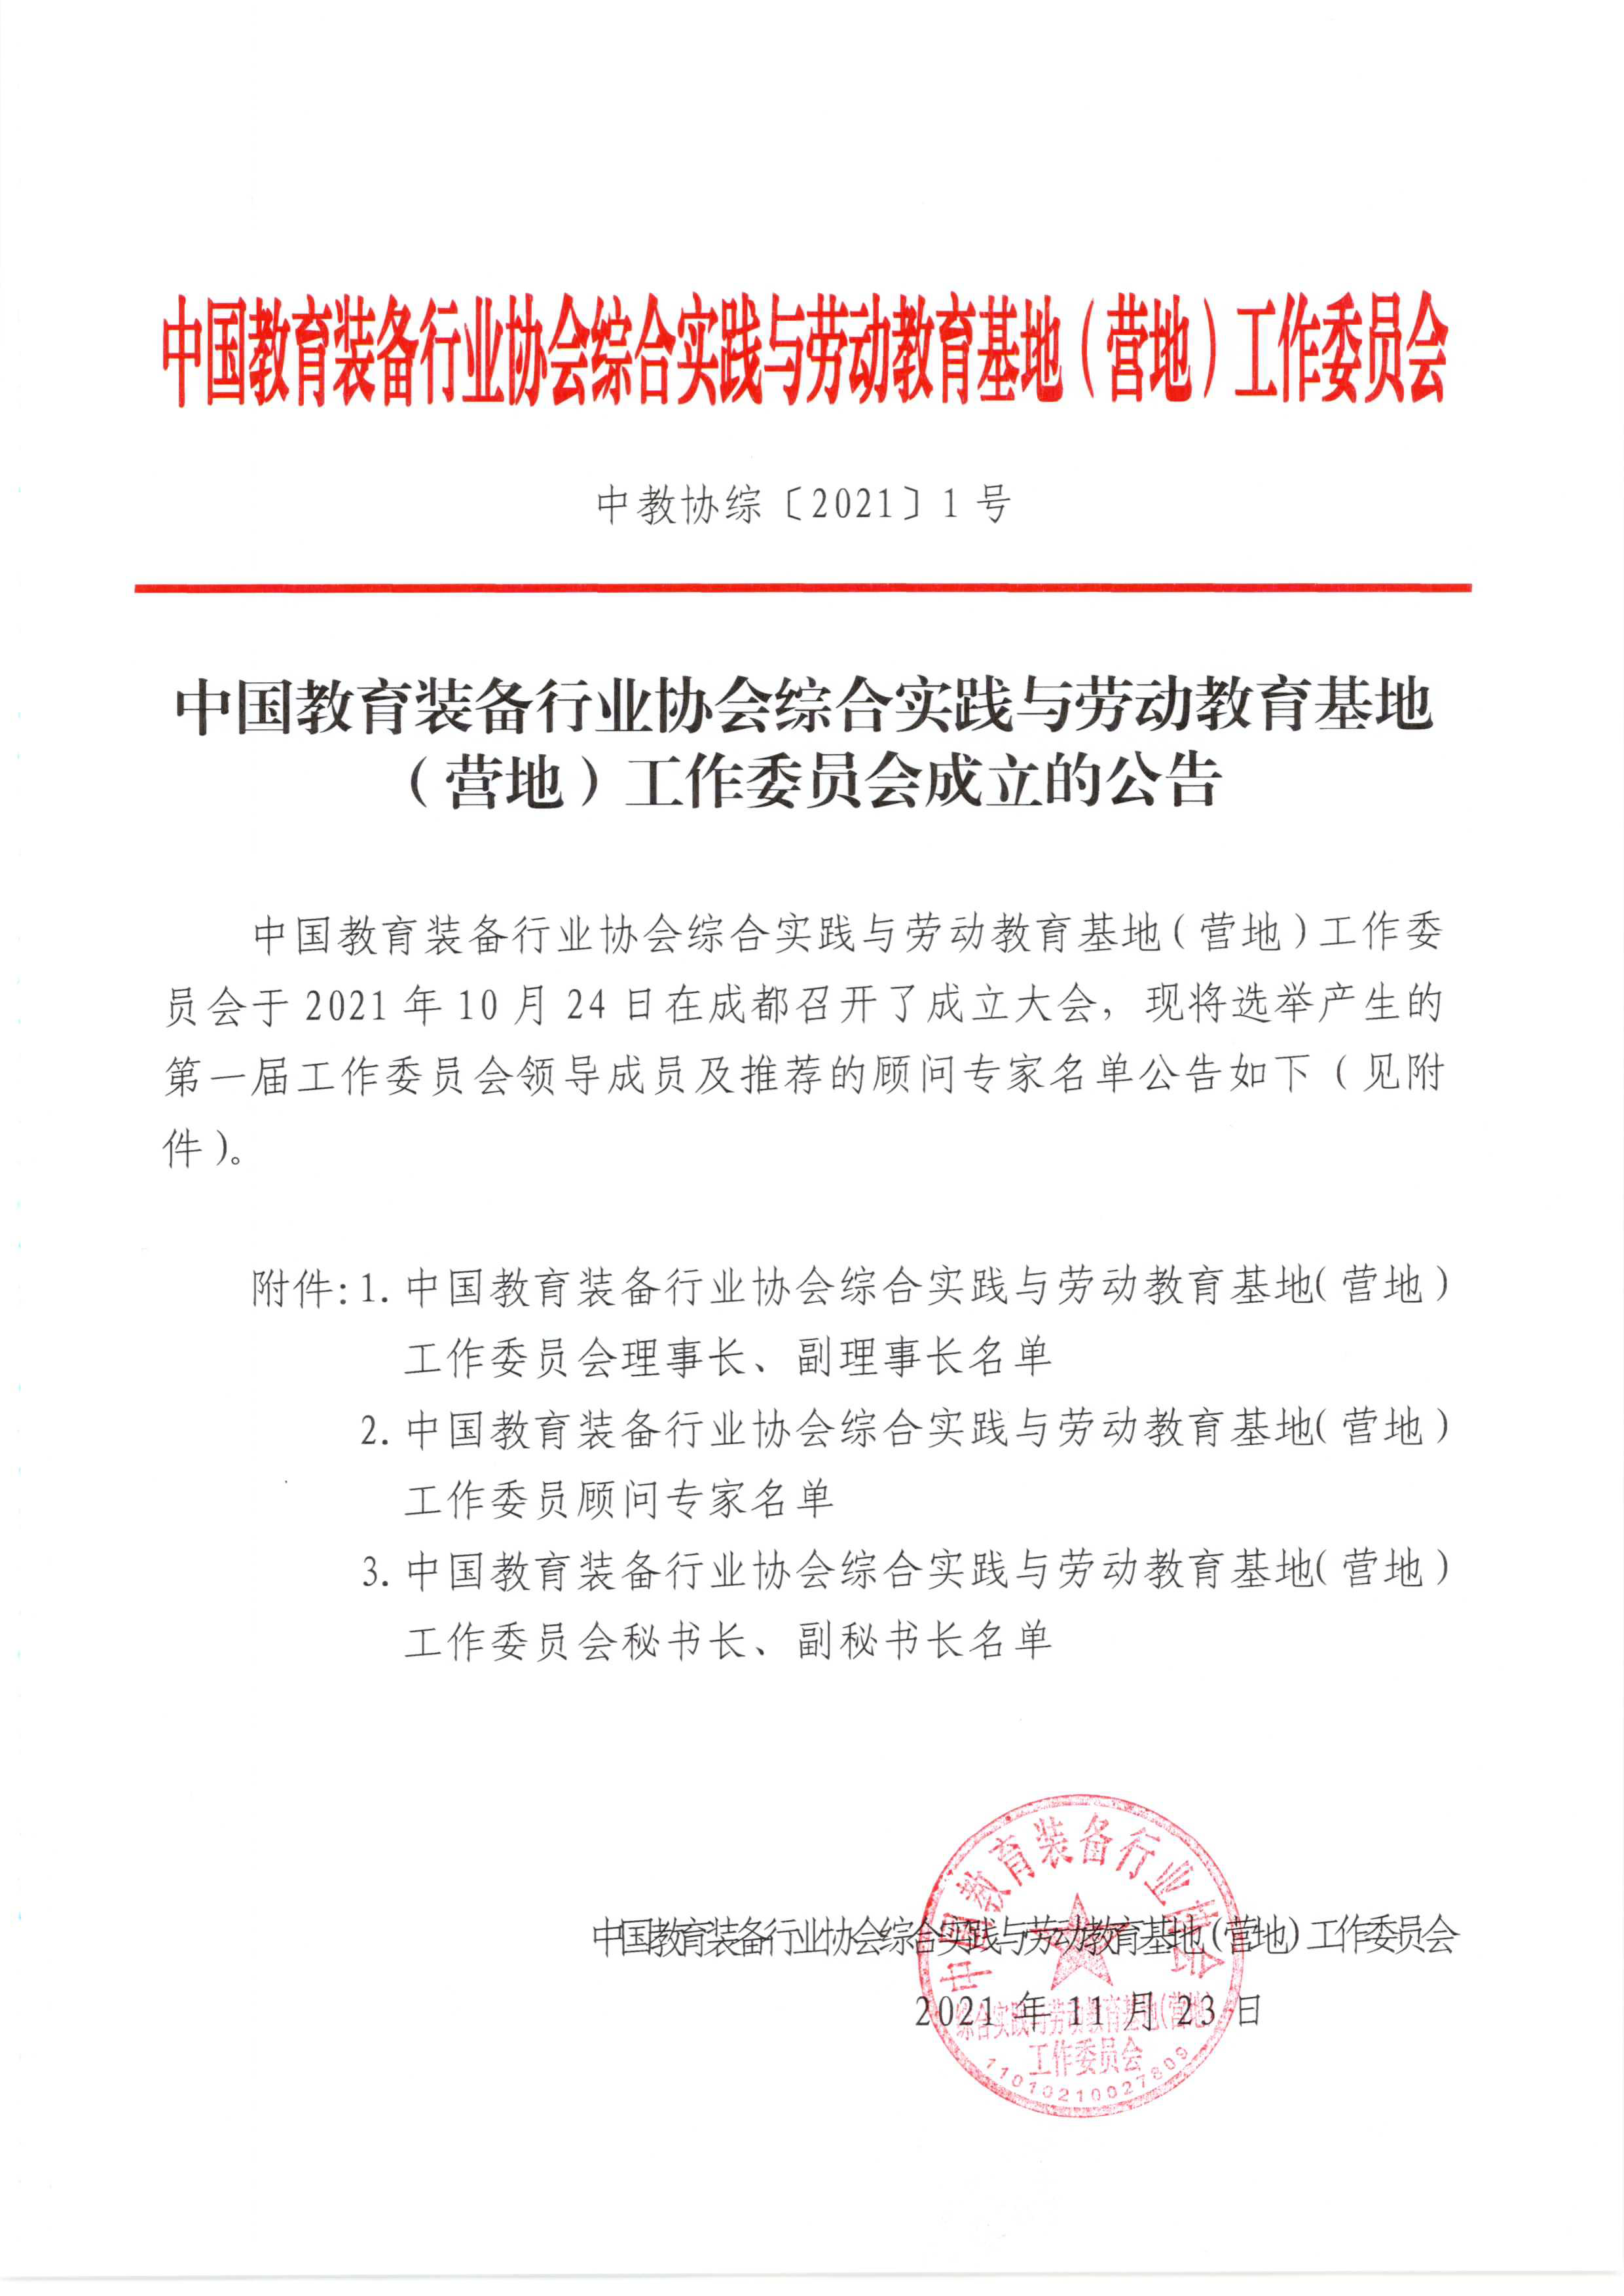 中国教育装备行业协会综合实践与劳动教育基地(营地)工作委员会成立的公告